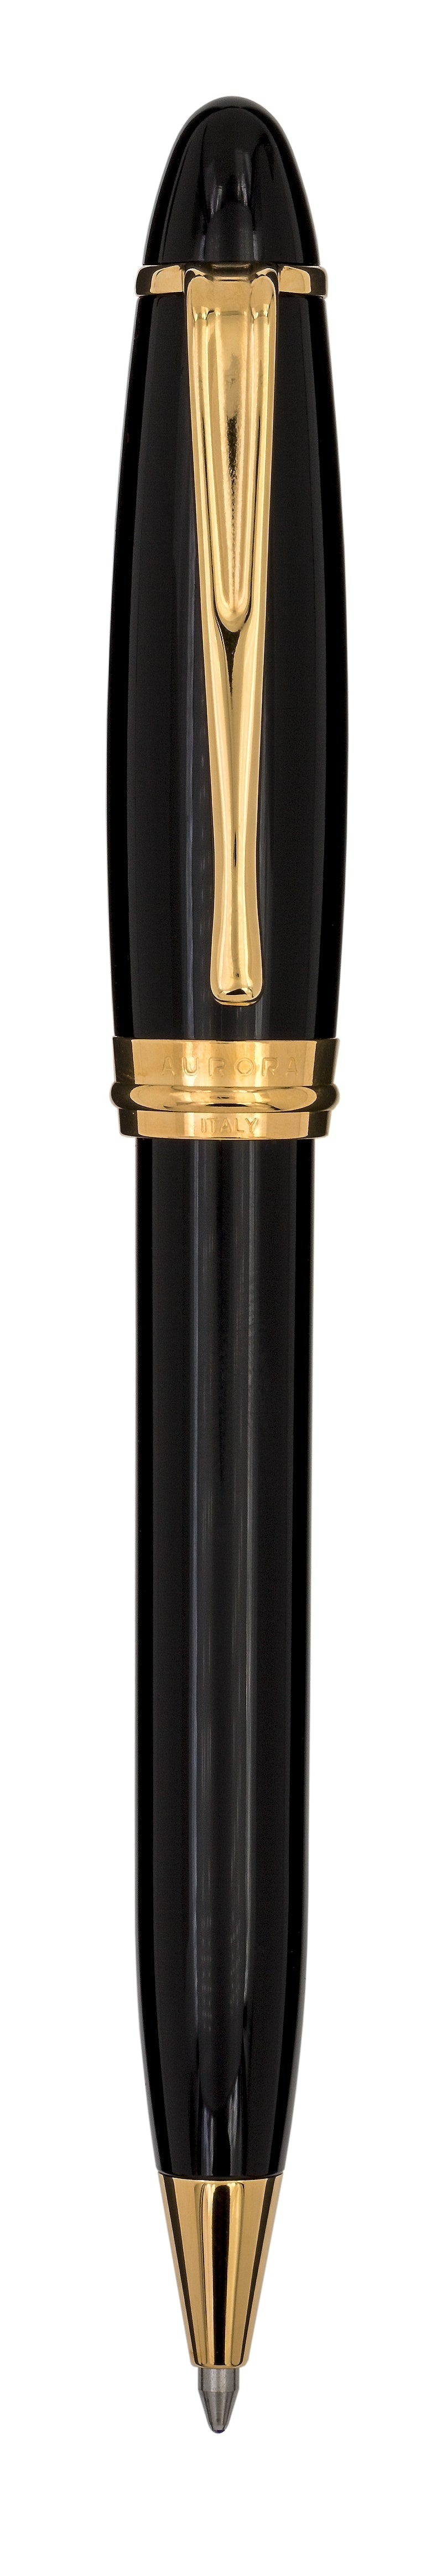 Aurora Ipsilon Resin Black with Gold Trims Ballpoint Pen